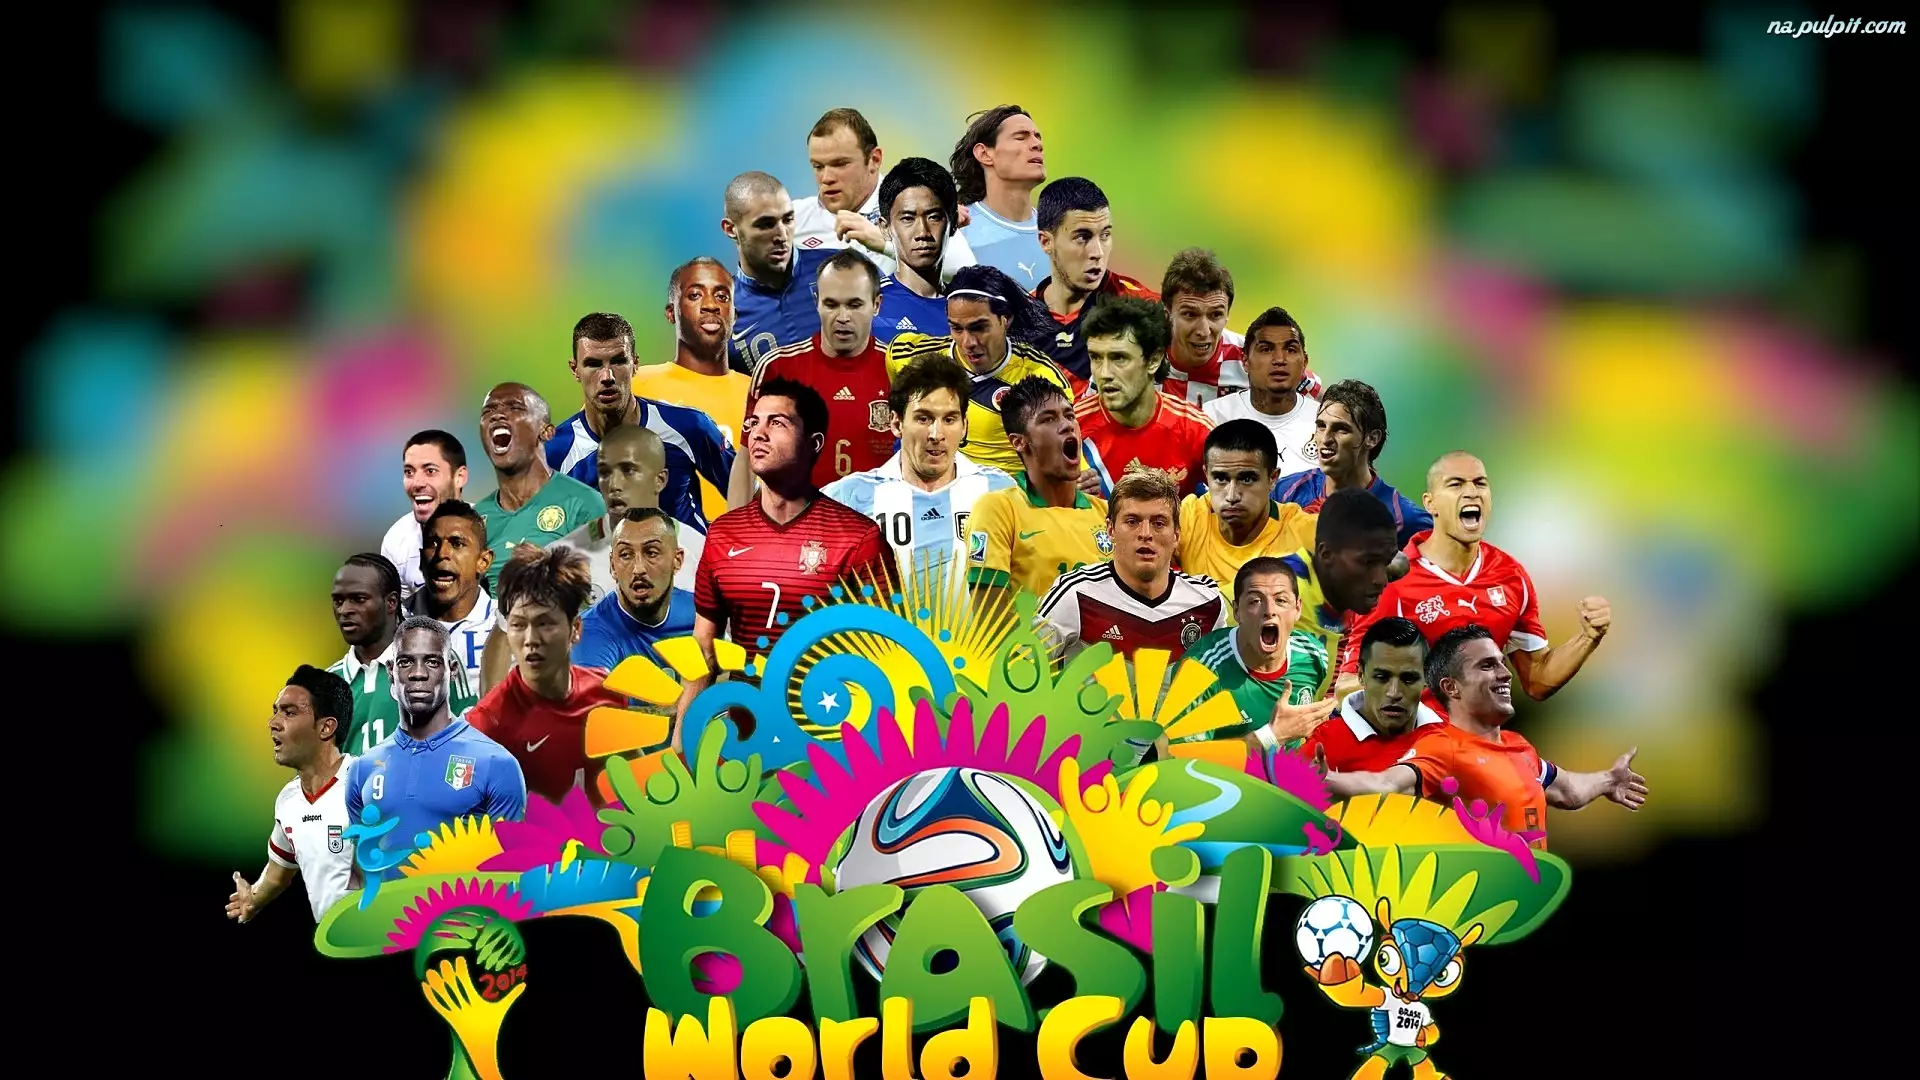 Piłkarze, Mistrzostwa Świata, 2014 Brazylia